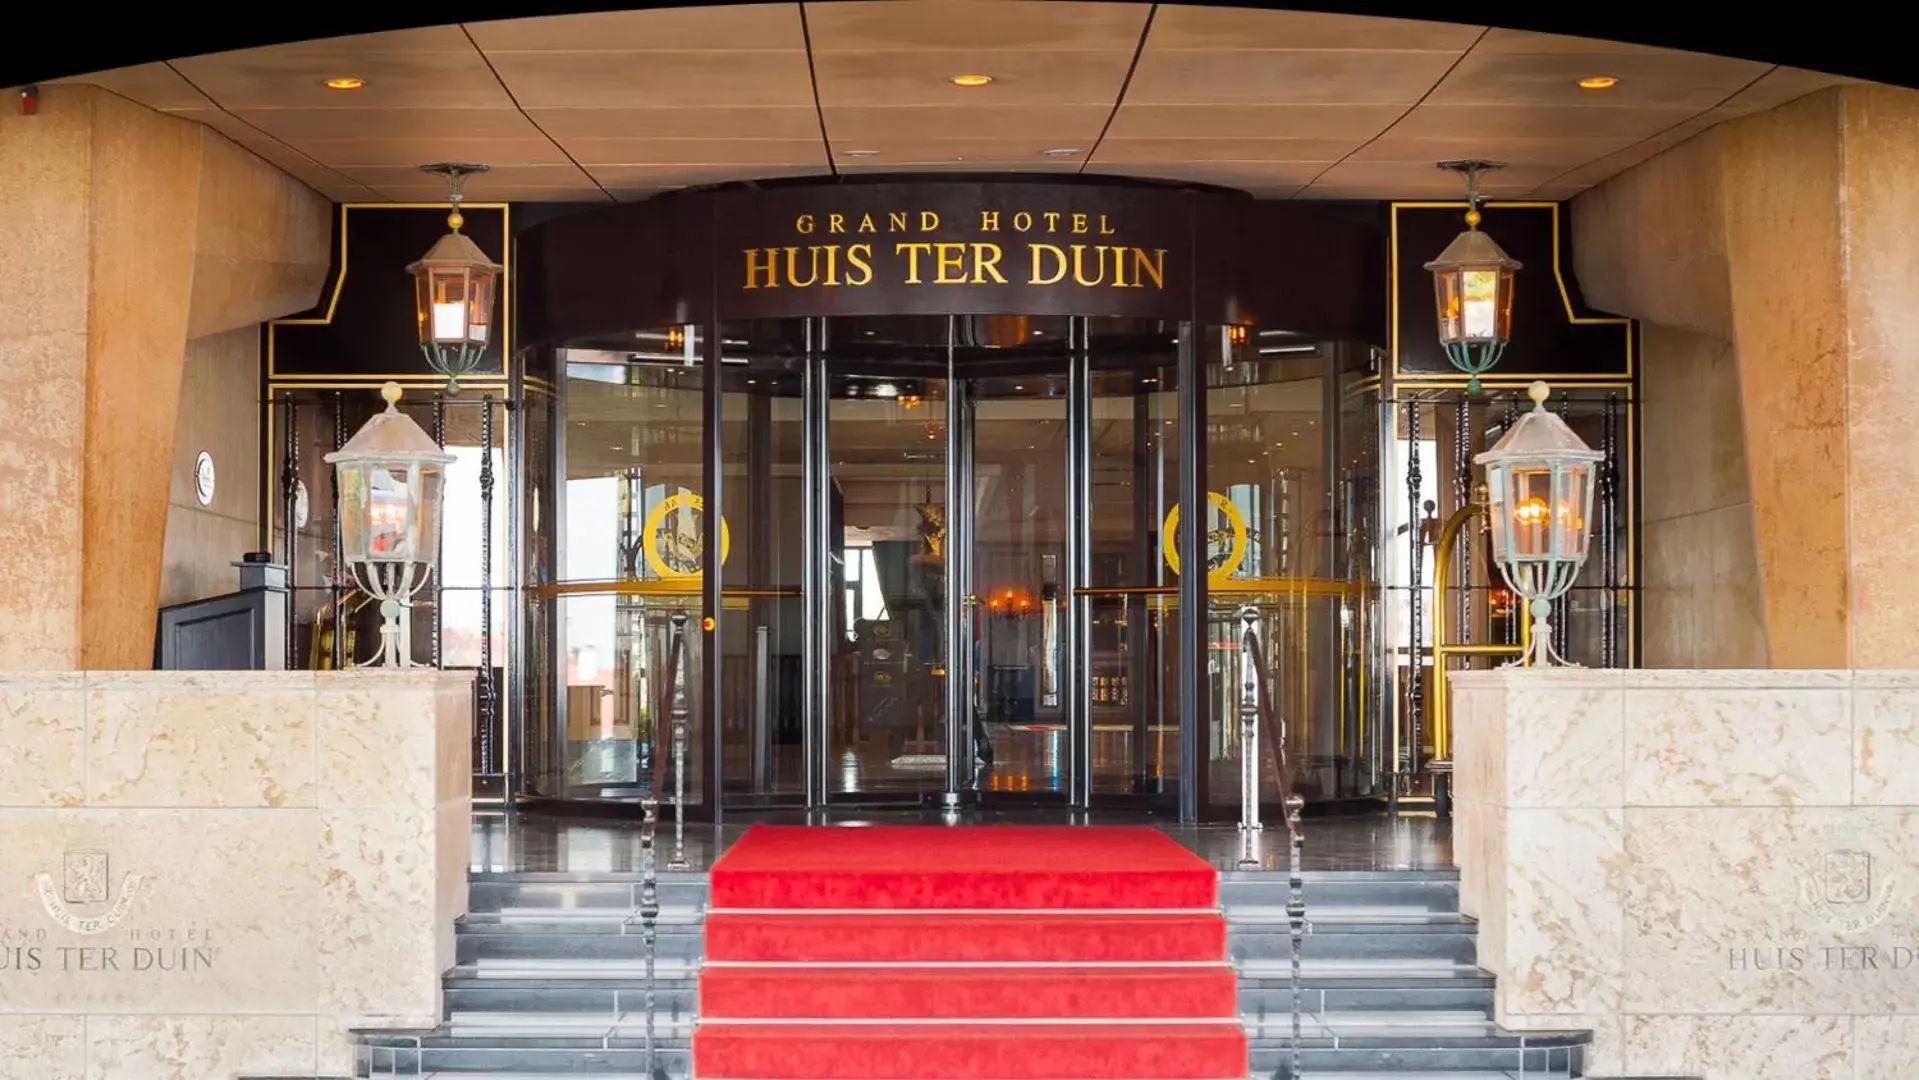 Facade/entrance in Grand Hotel Huis ter Duin